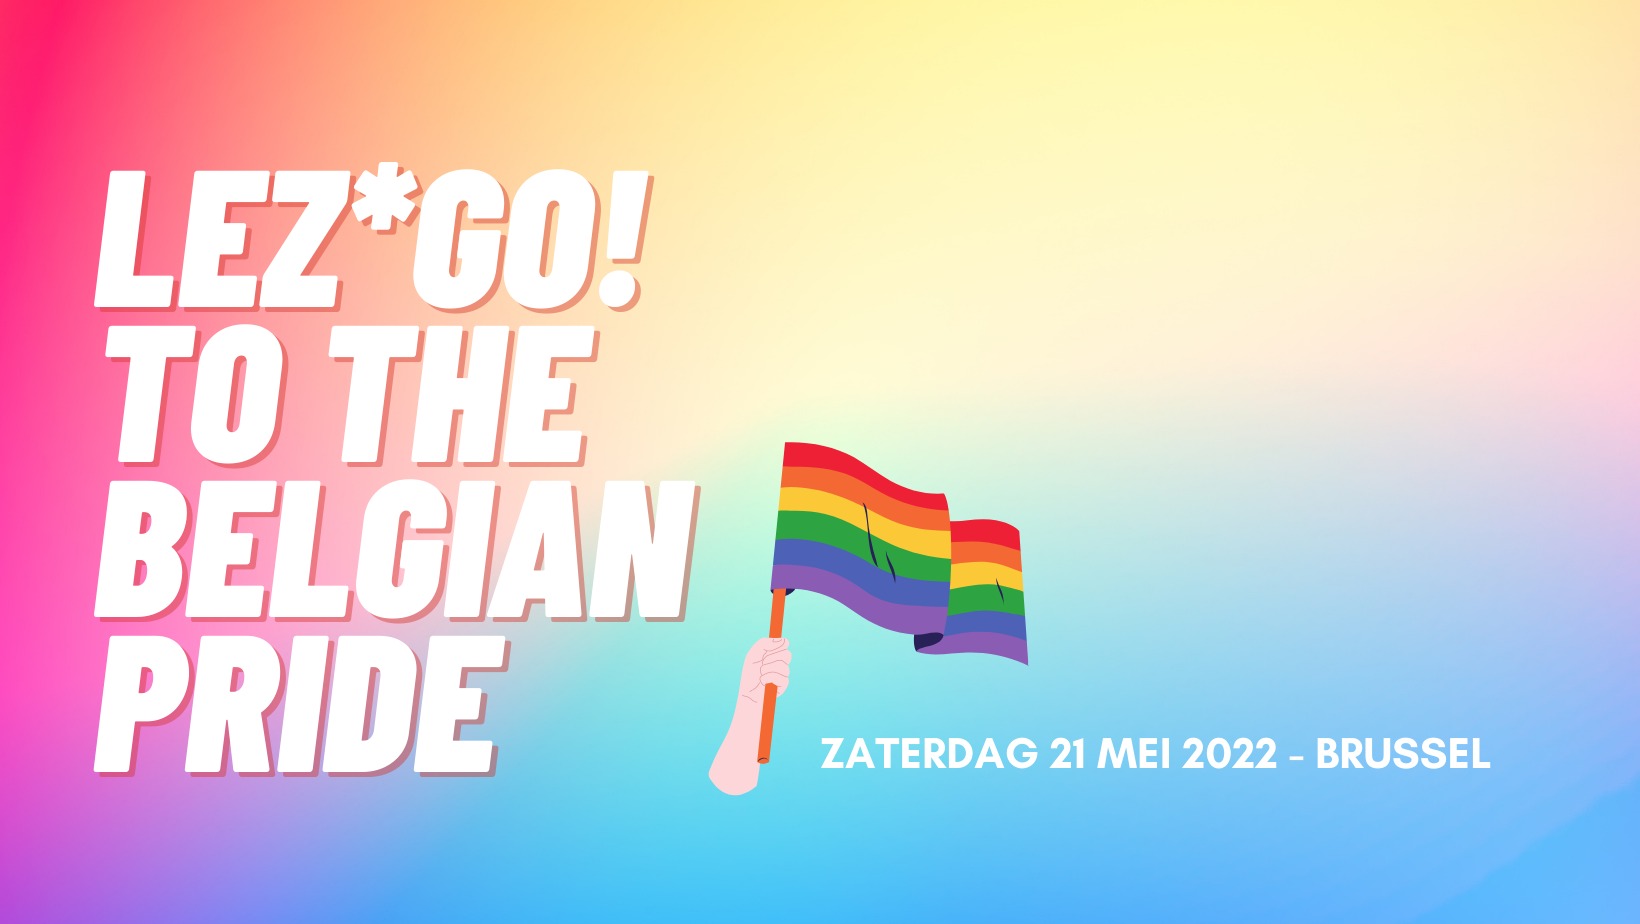 Lez*go! to the pride!